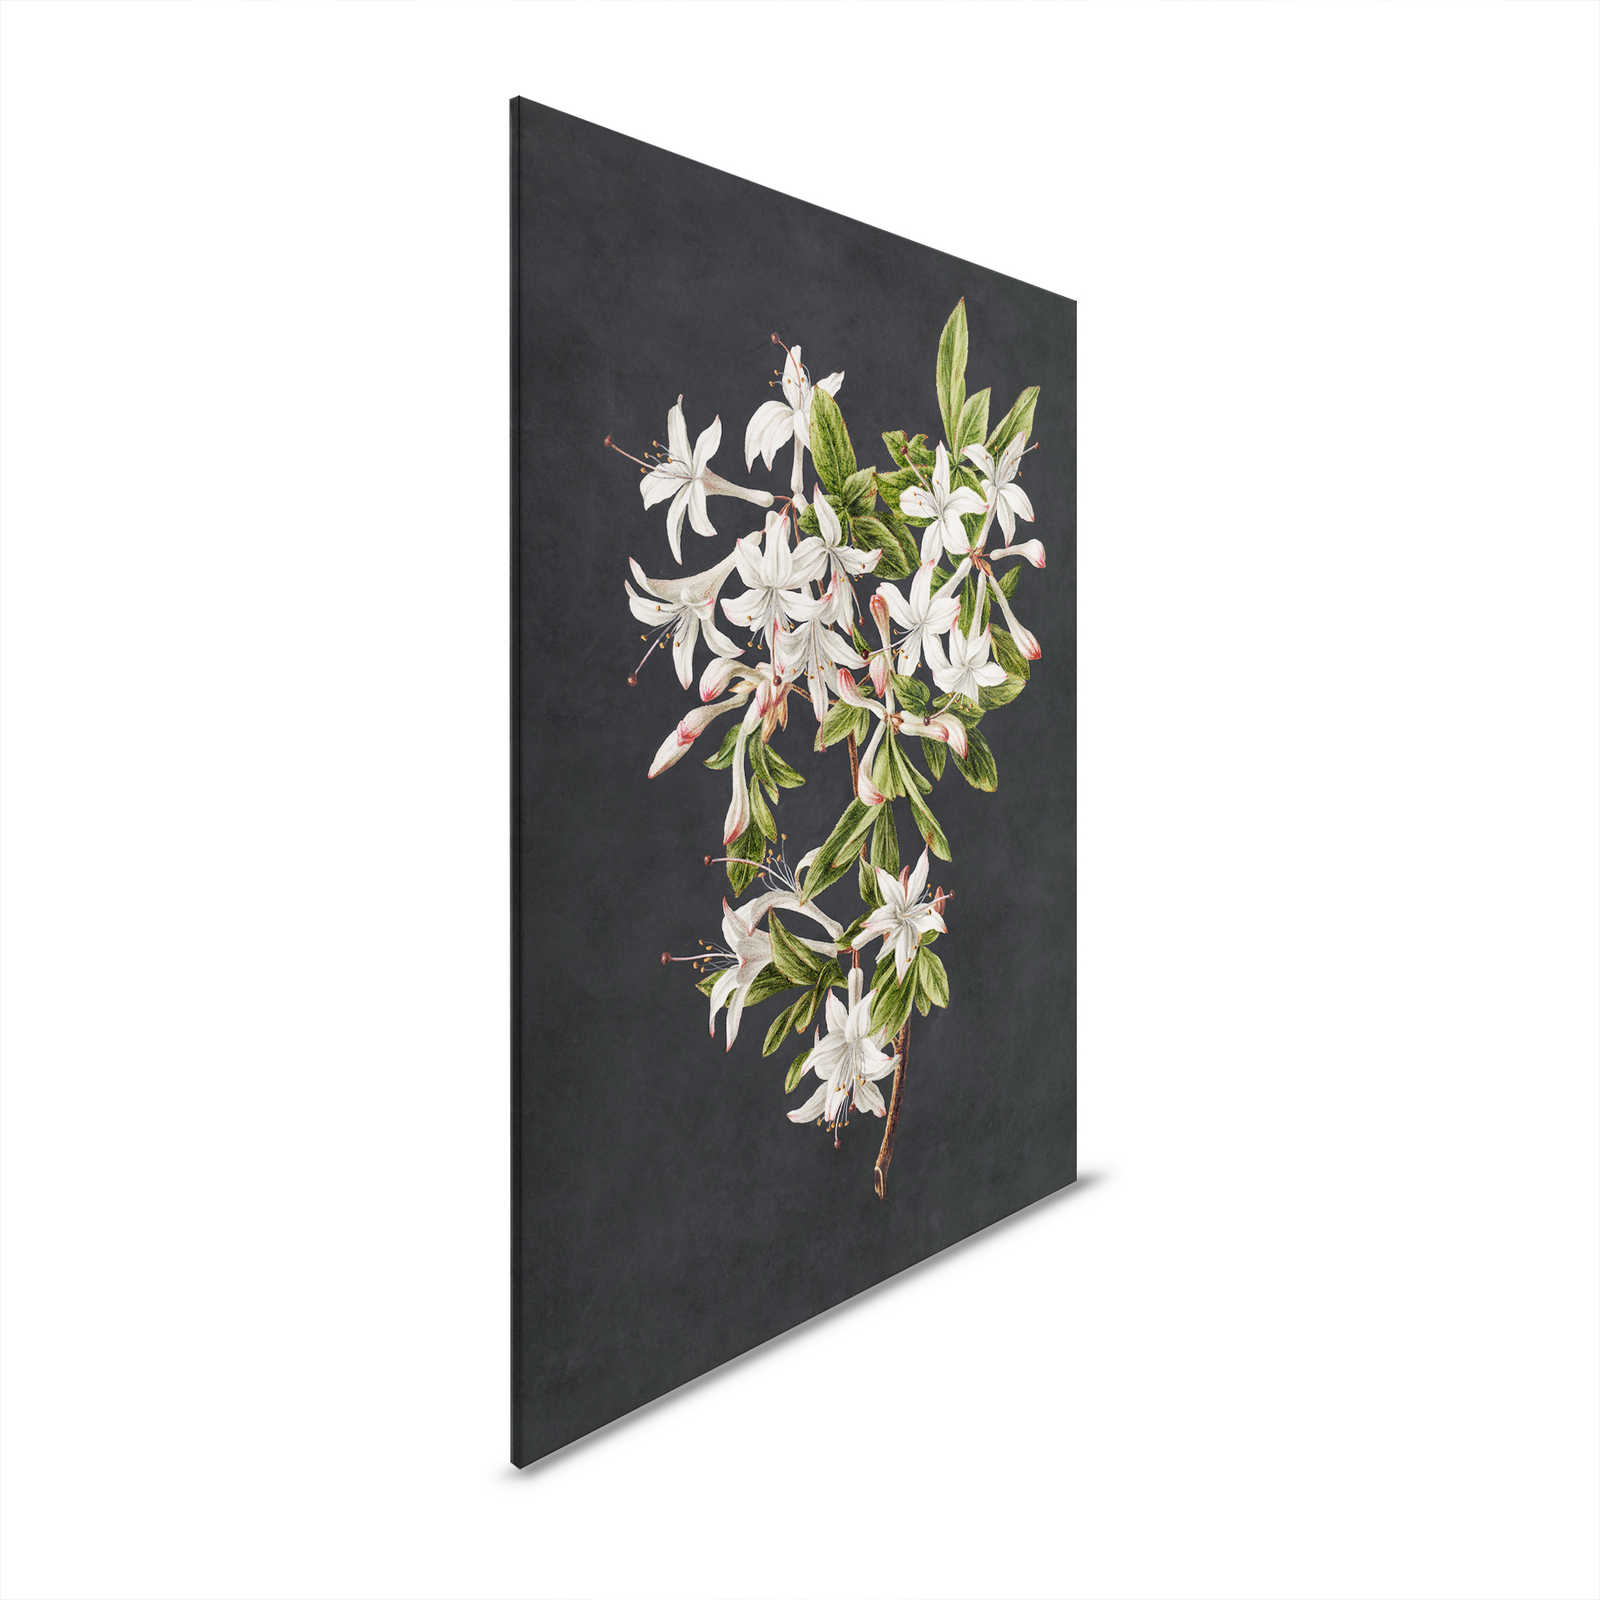 Midnight Garden 2 - Zwart Canvas Schilderij Bloeiende Tak Witte Bloemrijk - 0.80 m x 1.20 m
